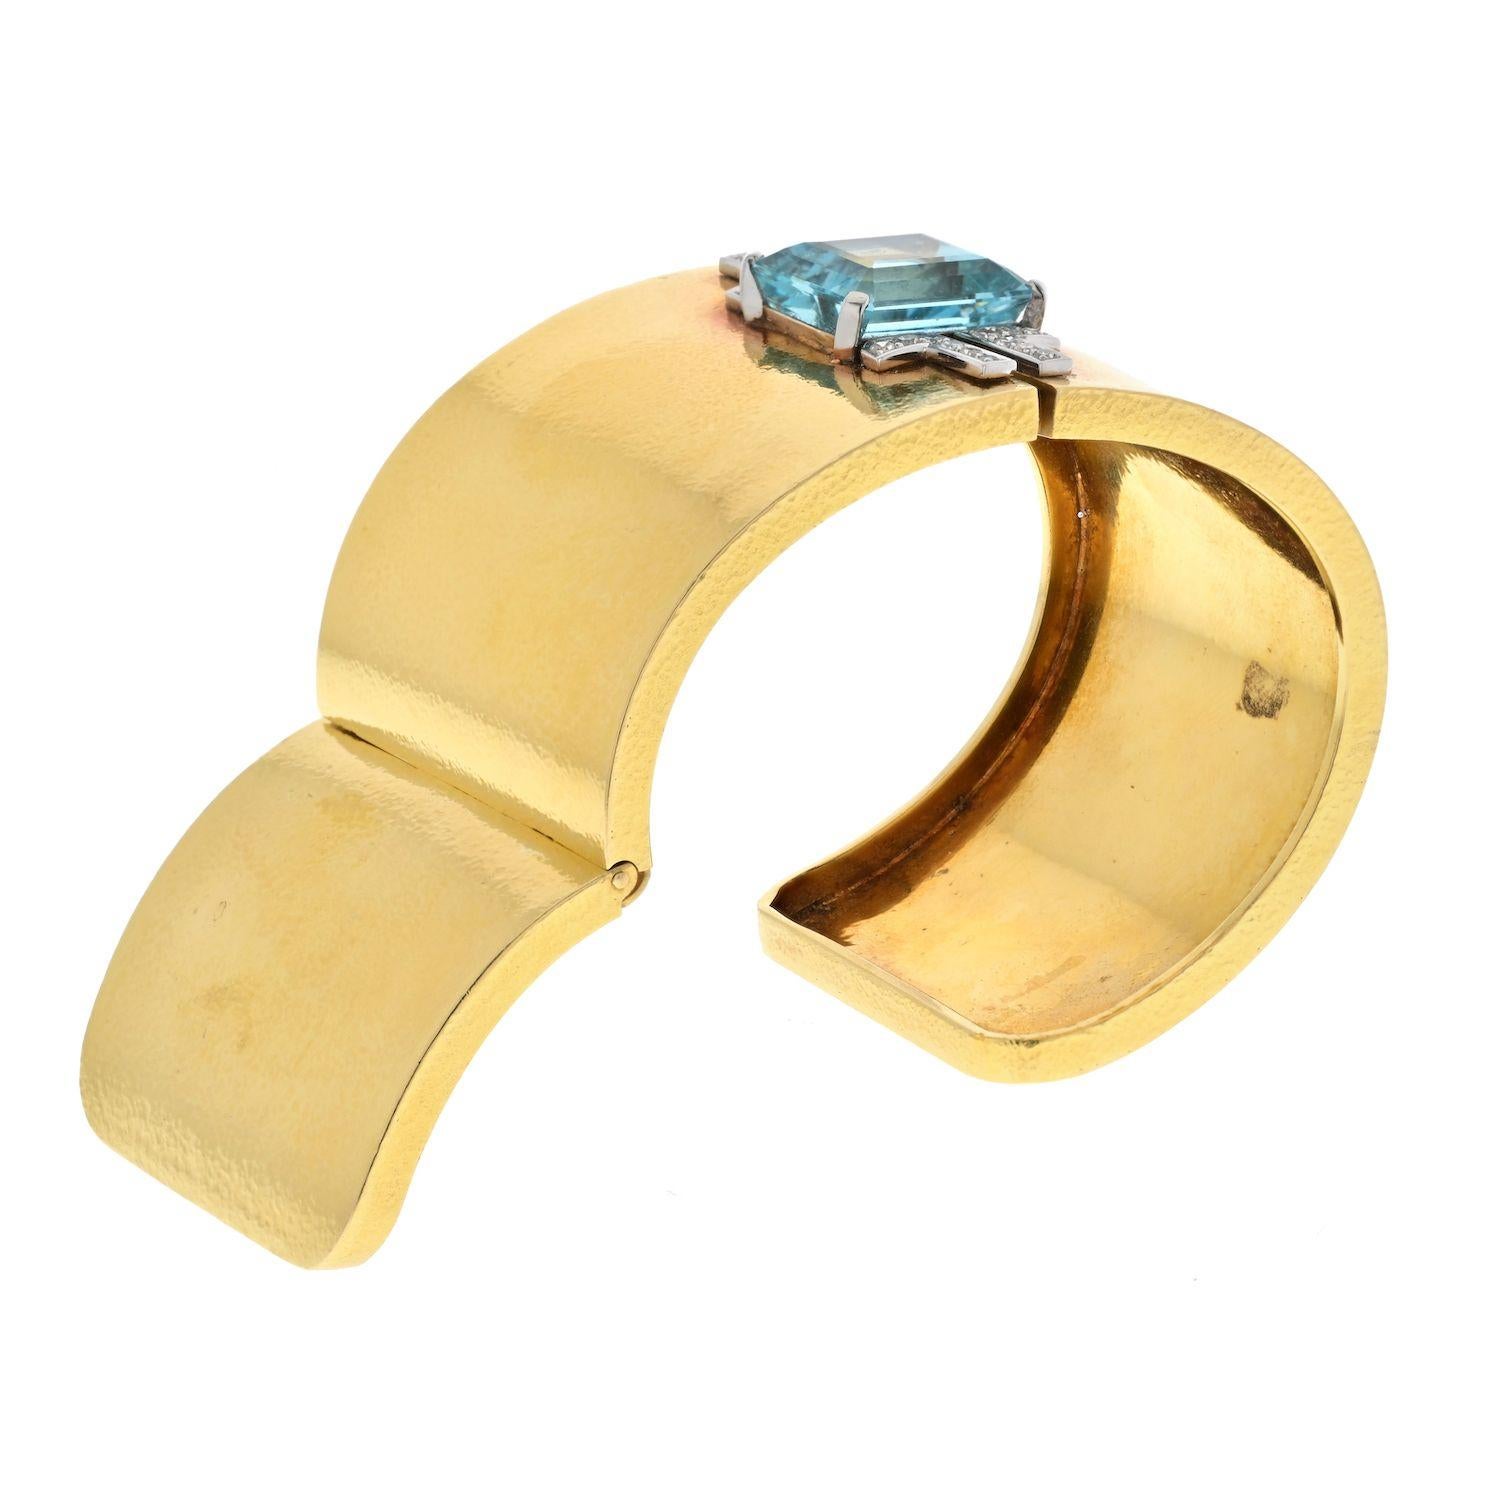 Das breite Aquamarin-Armband aus Platin und 18 Karat Gelbgold von David Webb ist ein atemberaubendes Schmuckstück, das Eleganz und Luxus ausstrahlt. In der Mitte dieses Armbands mit Scharnier befindet sich ein bezaubernder Aquamarin im